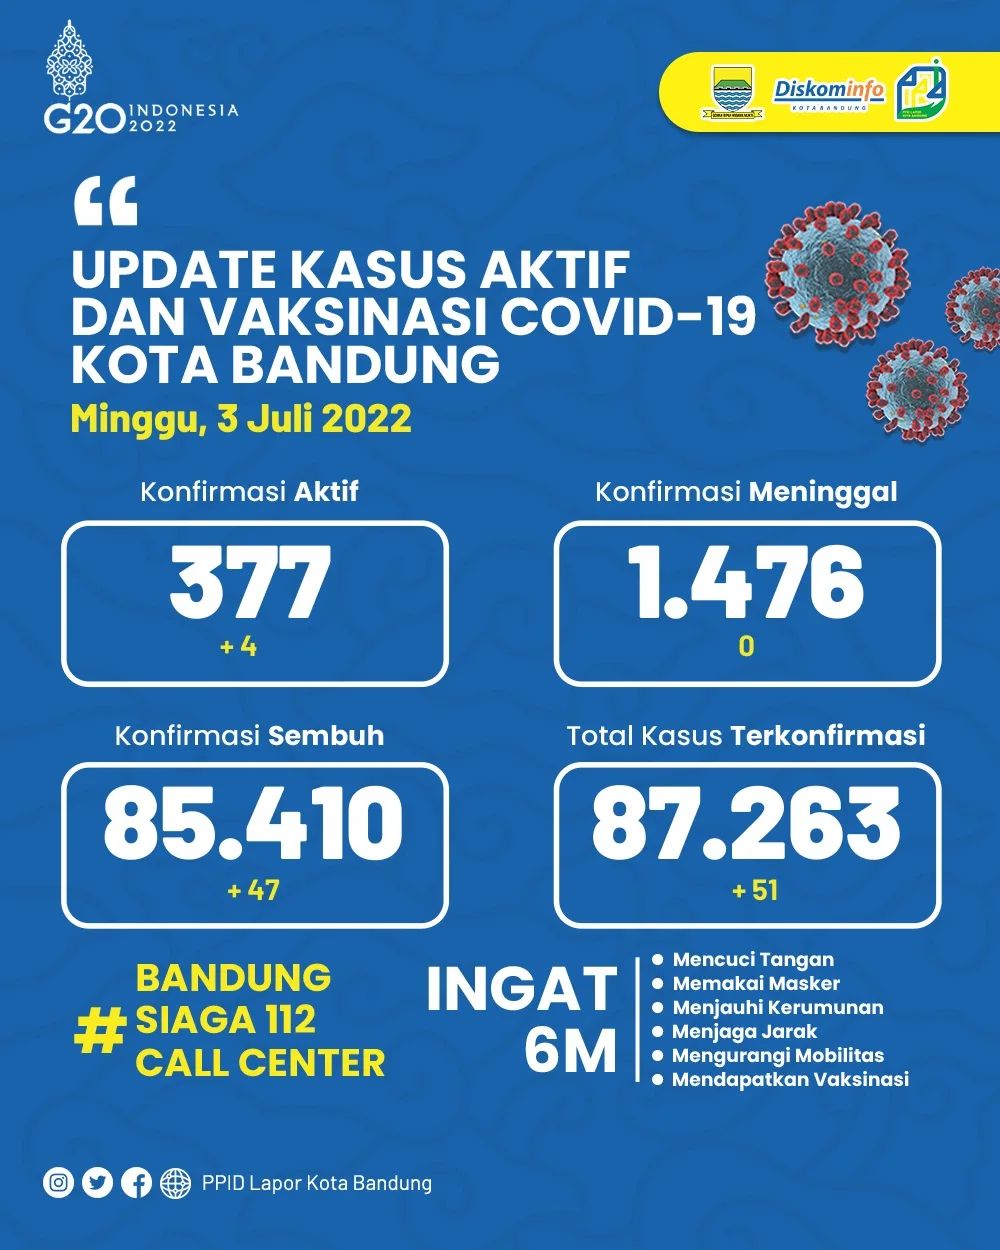 UPDATE STATISTIK COVID-19 DI KOTA BANDUNG PER TANGGAL 3 JULI 2022